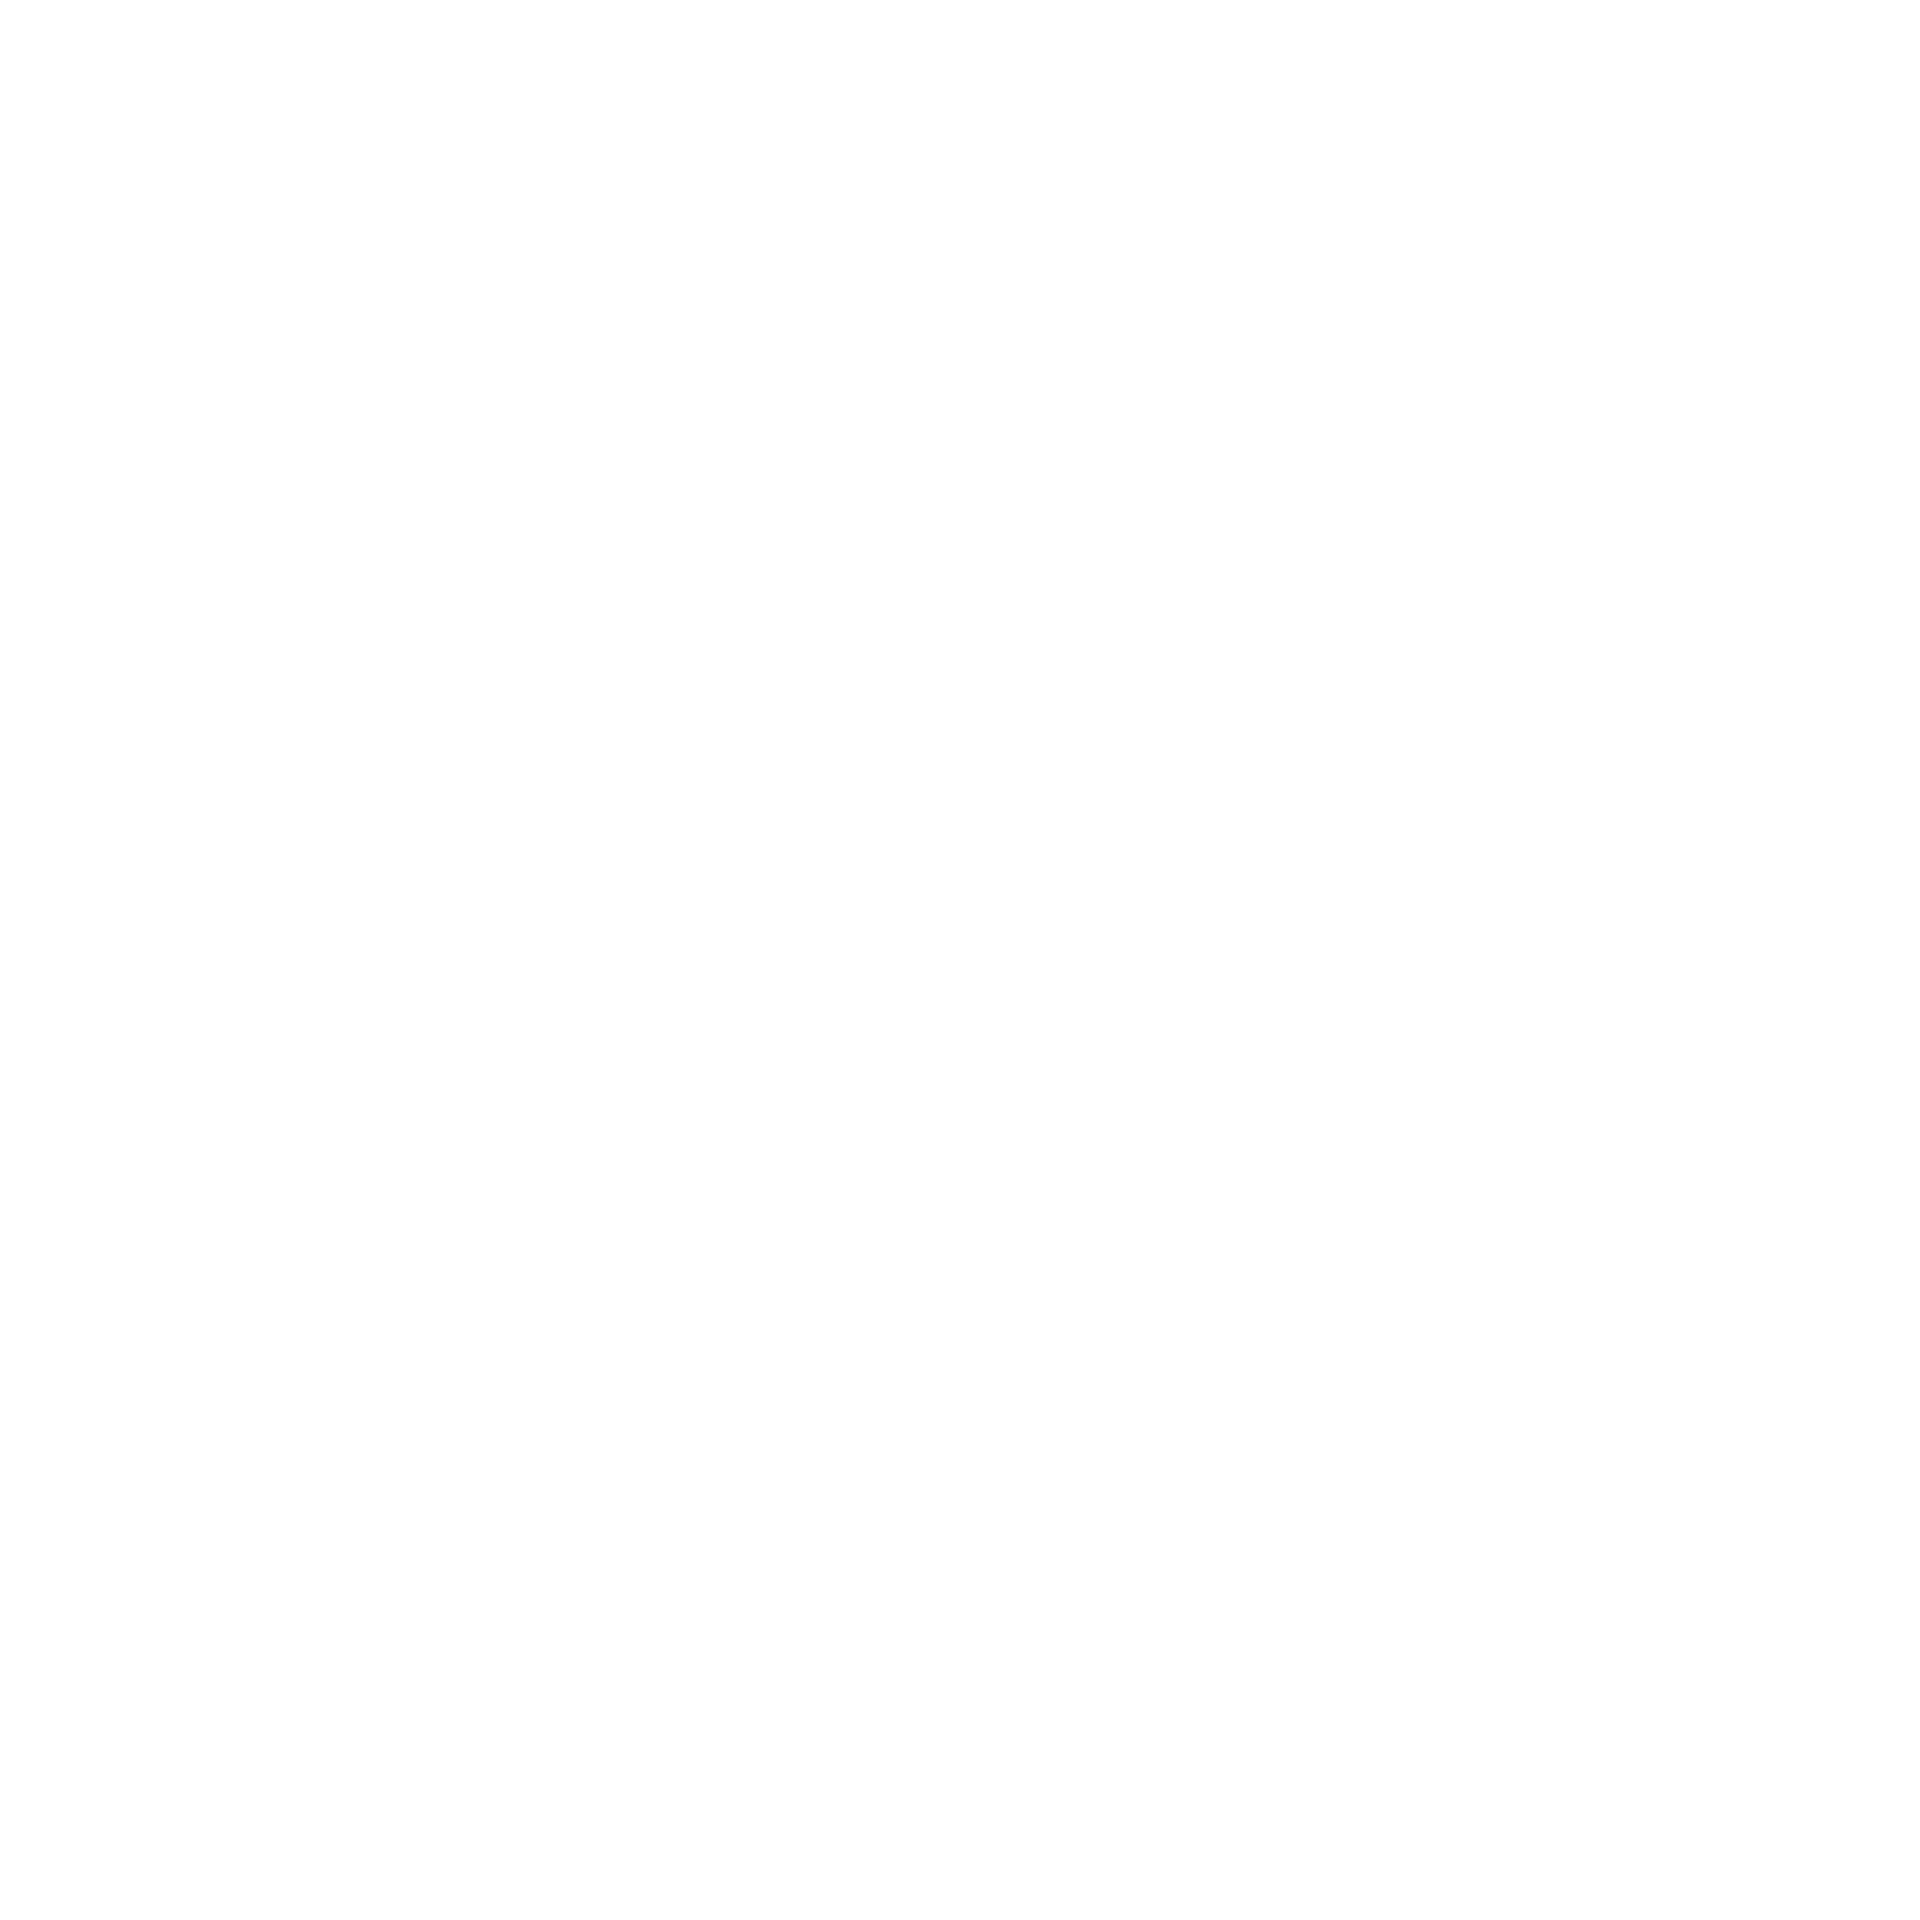 The E- Footer logo